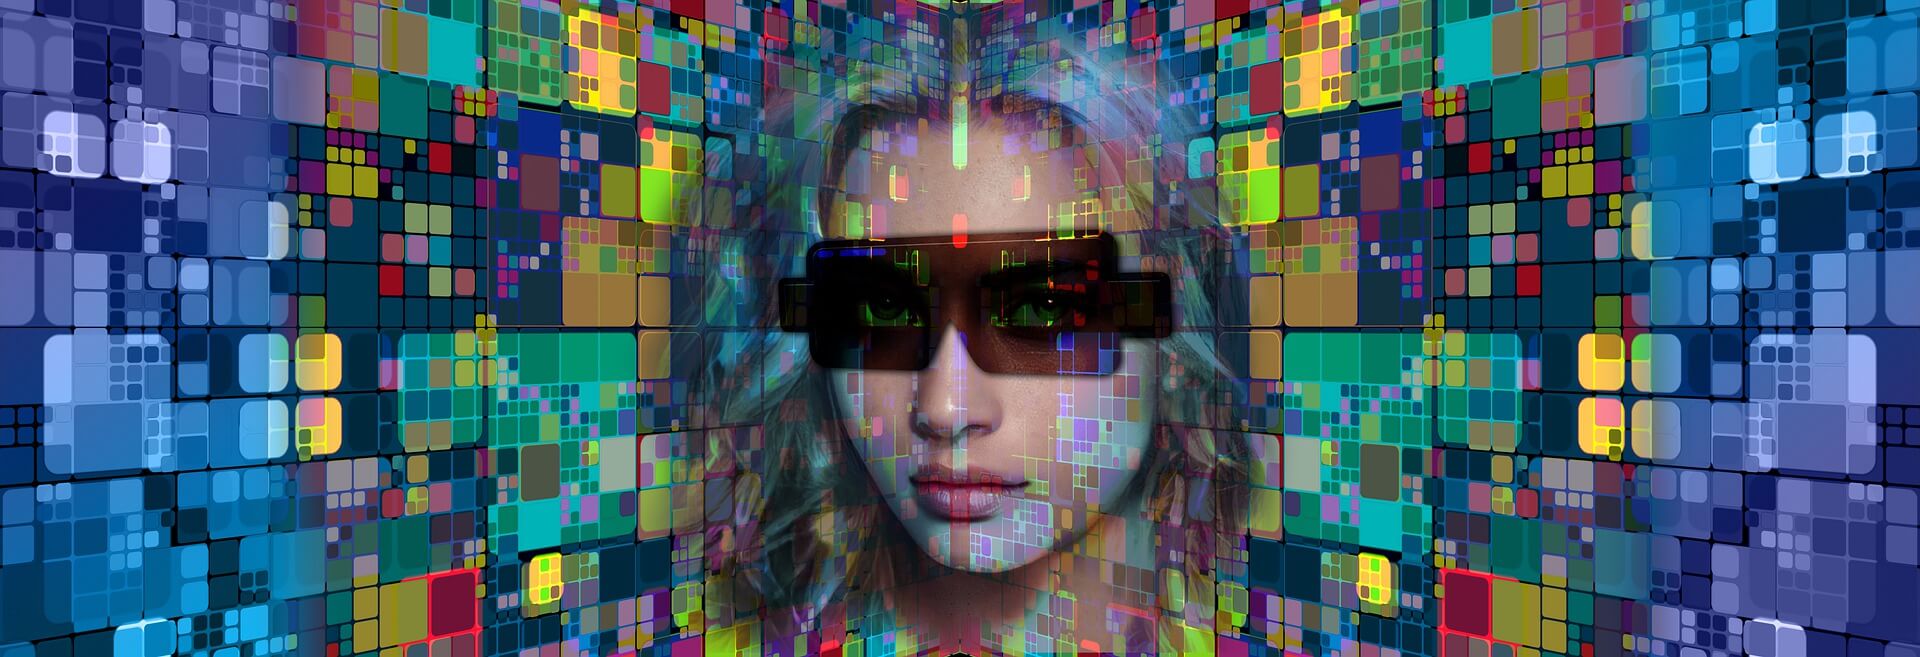 图片展示了一个戴墨镜的女性面部，背景是由多彩的数字化像素块组成，营造出一种科技感和未来主义的风格。